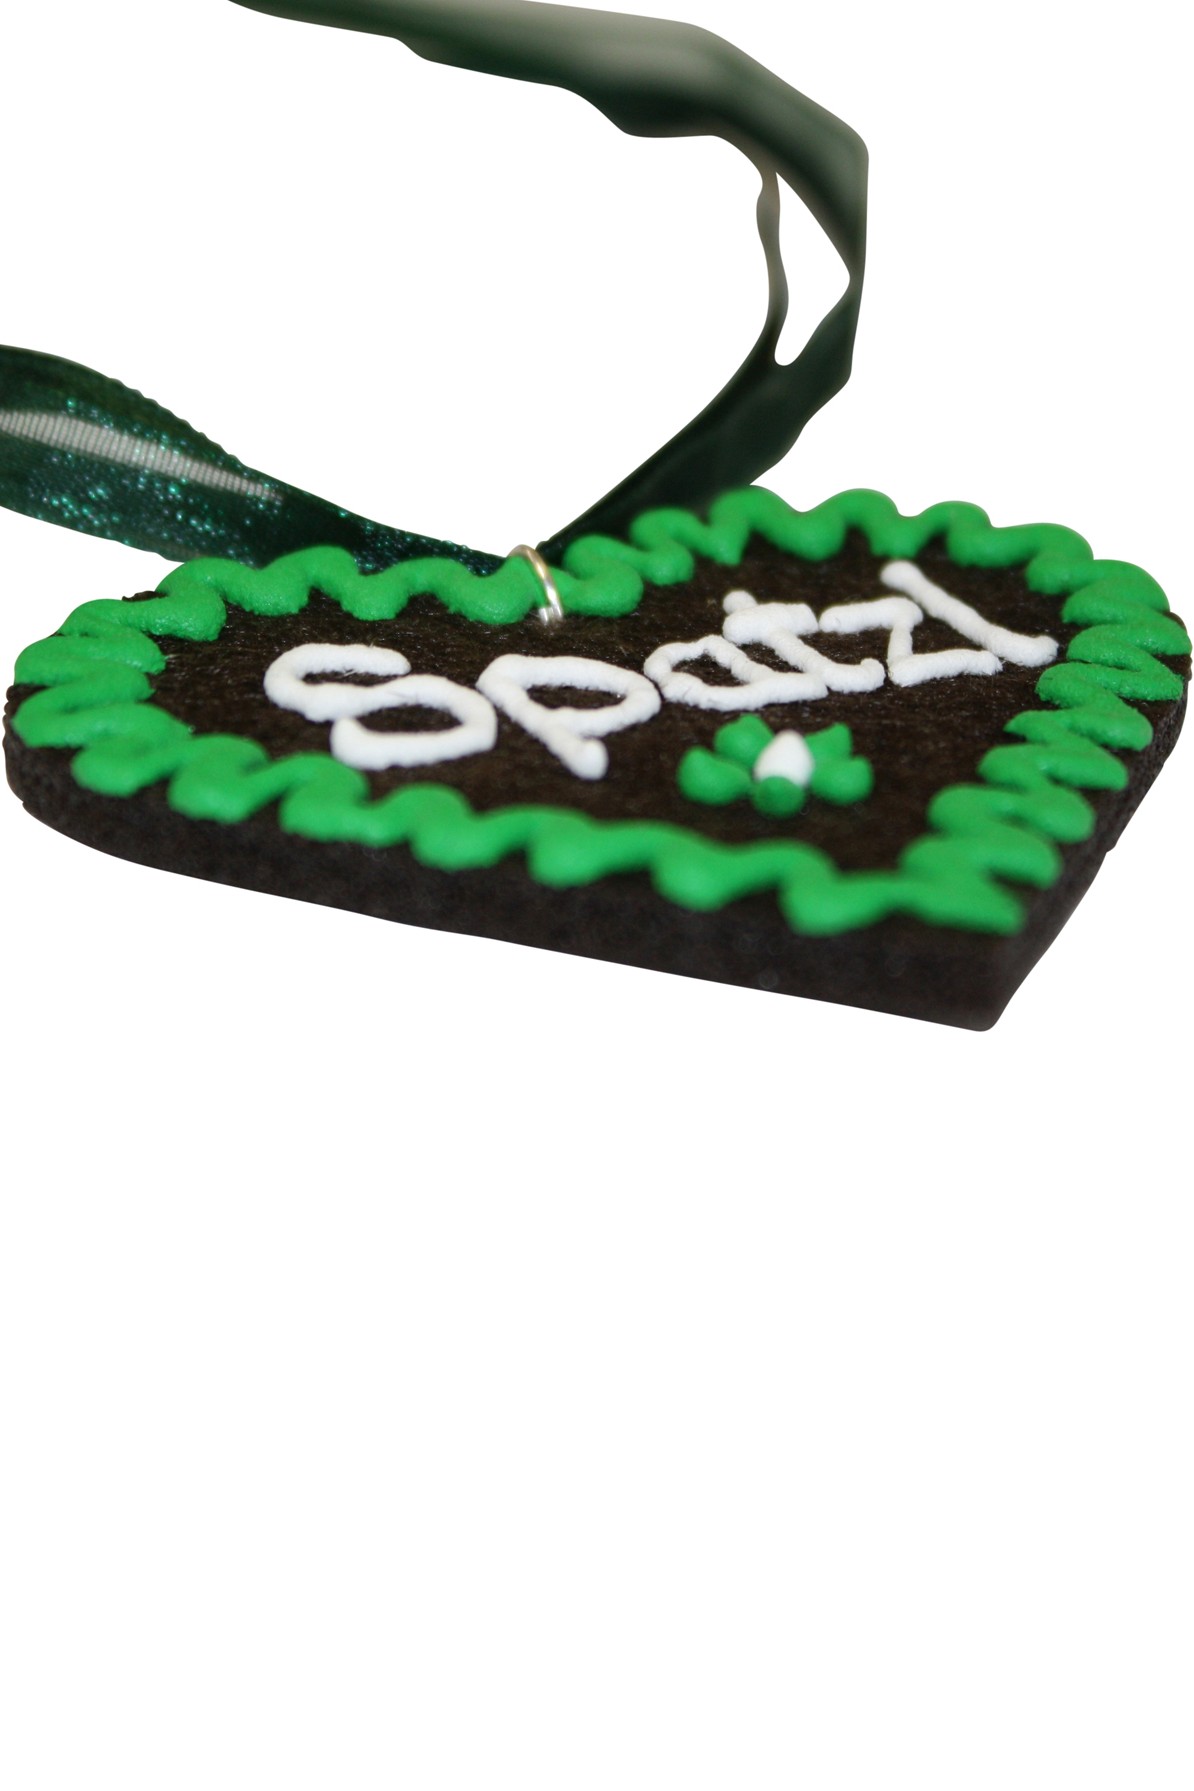 Halskette Filzherz Spatzl grün